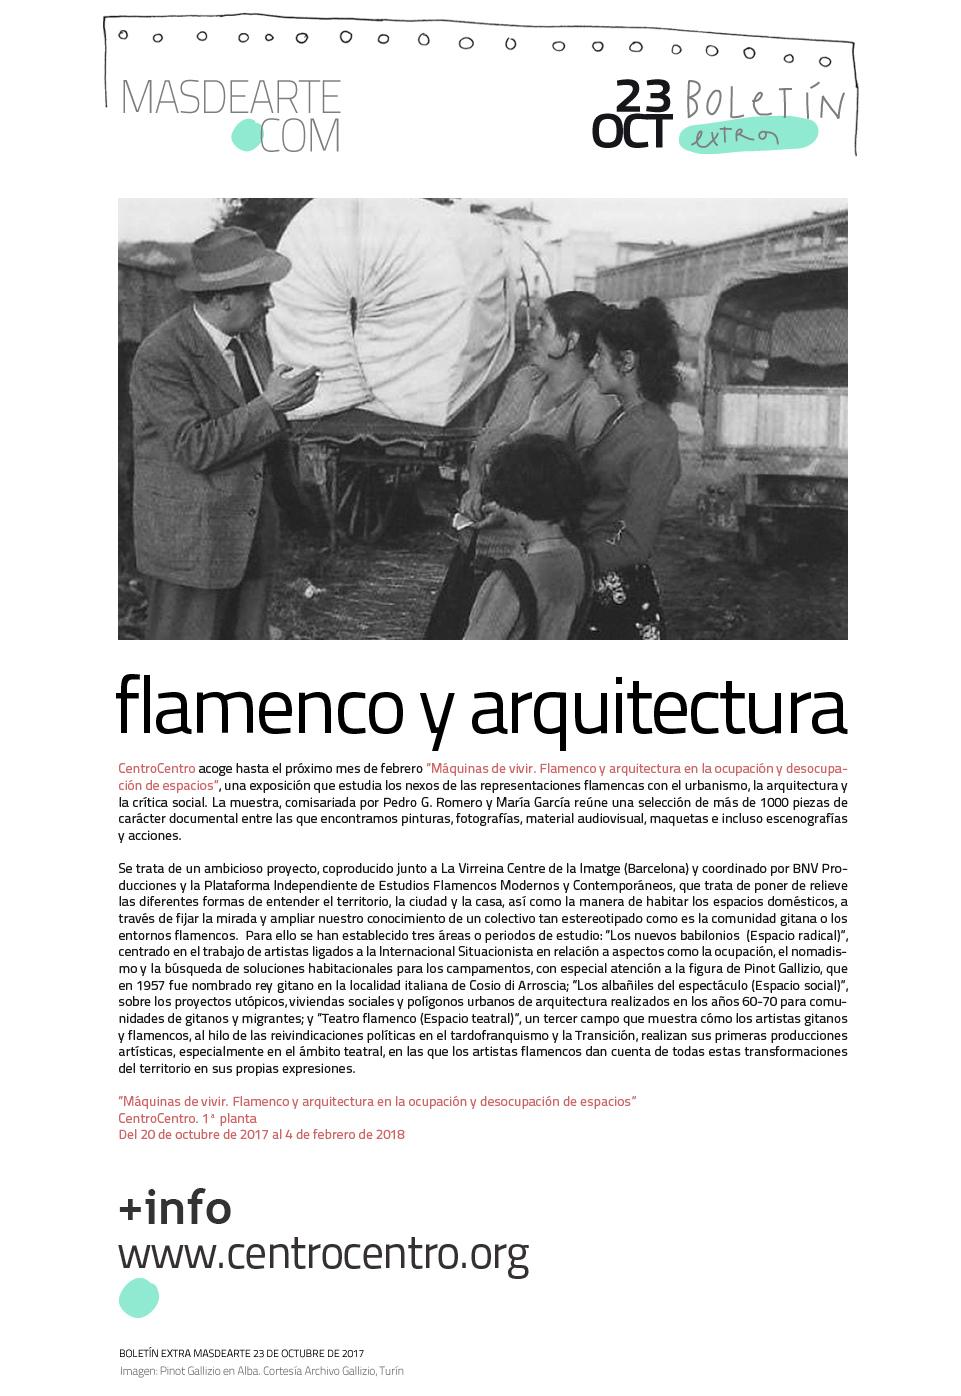 "Máquinas de vivir. Flamenco y arquitectura en la ocupación
 y desocupación de espacios". CentroCentro. Palacio de Cibeles